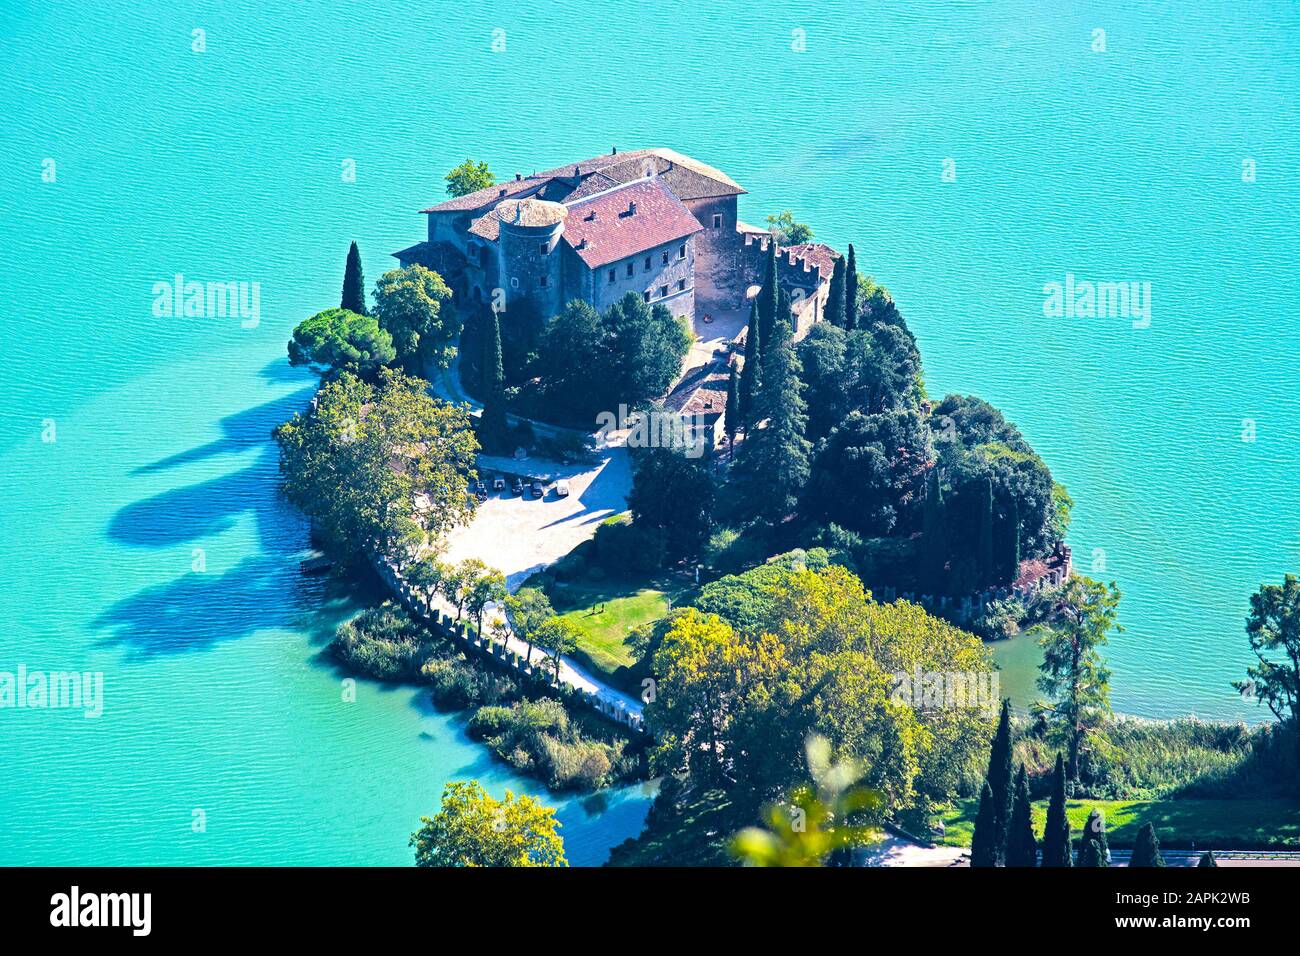 Trentino summer landscape, lake and castle Toblino, Alto Adige, Italy Stock Photo